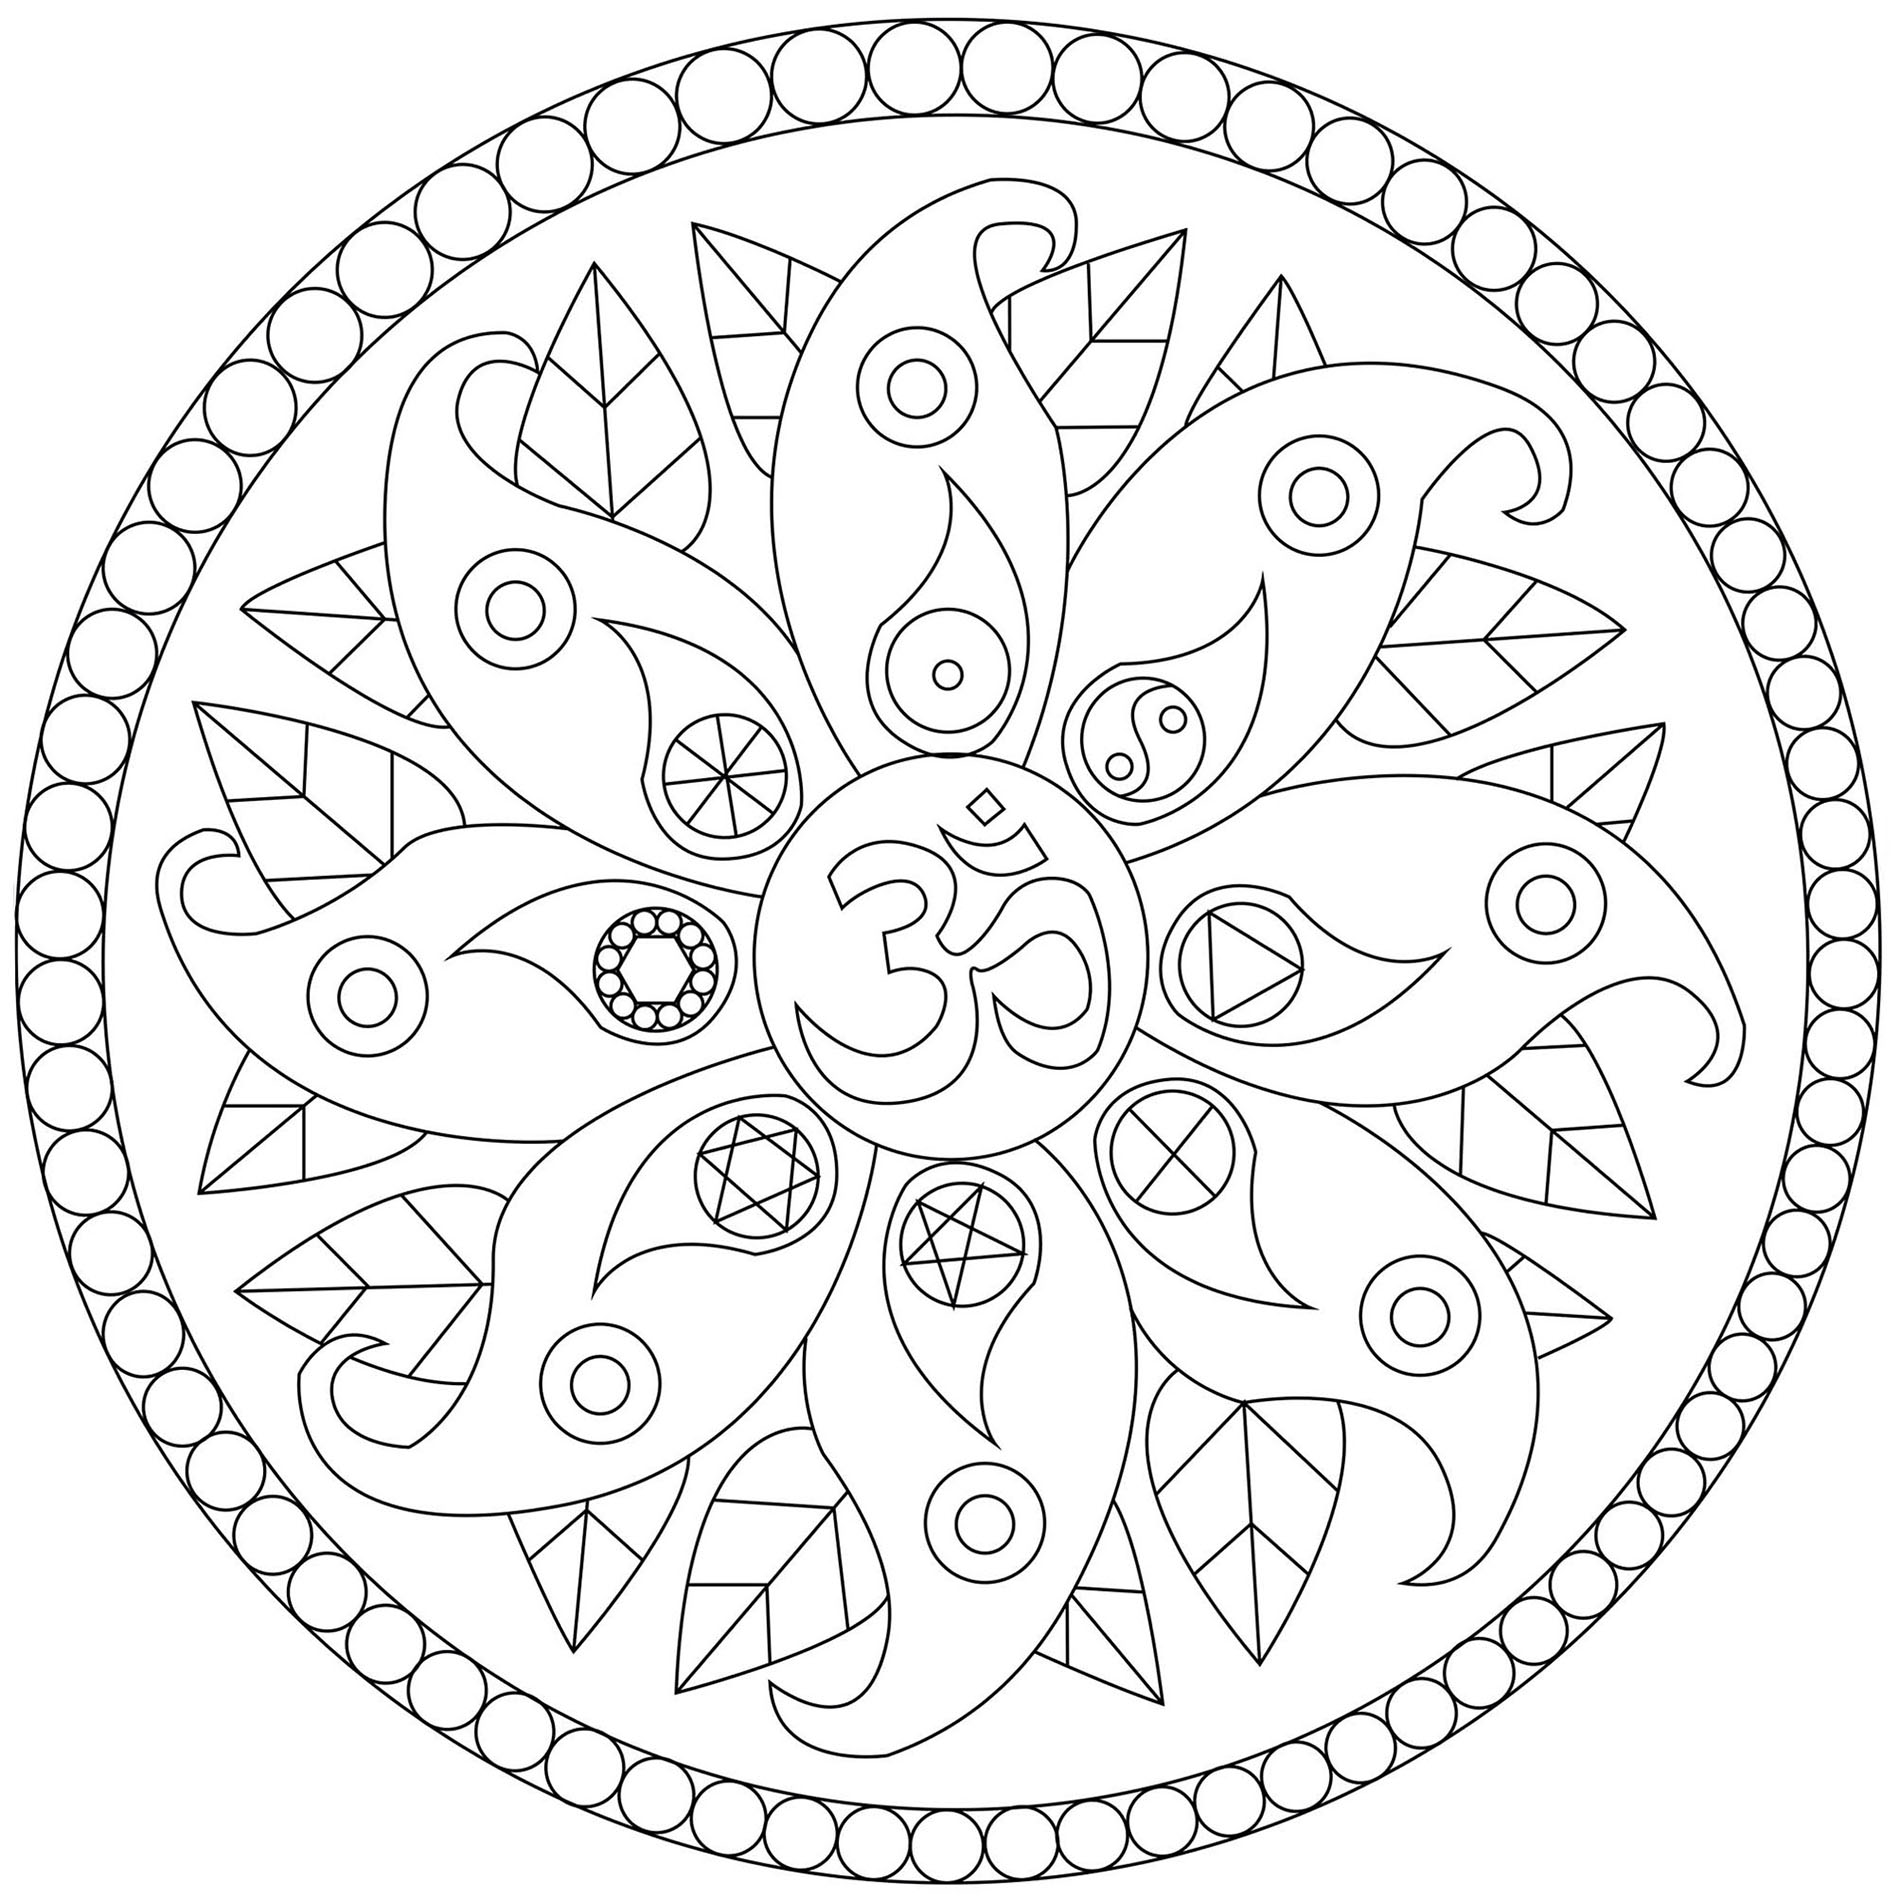 Motivi vegetali e simboli vari: Yin & Yang, Om .., Artista : Caillou